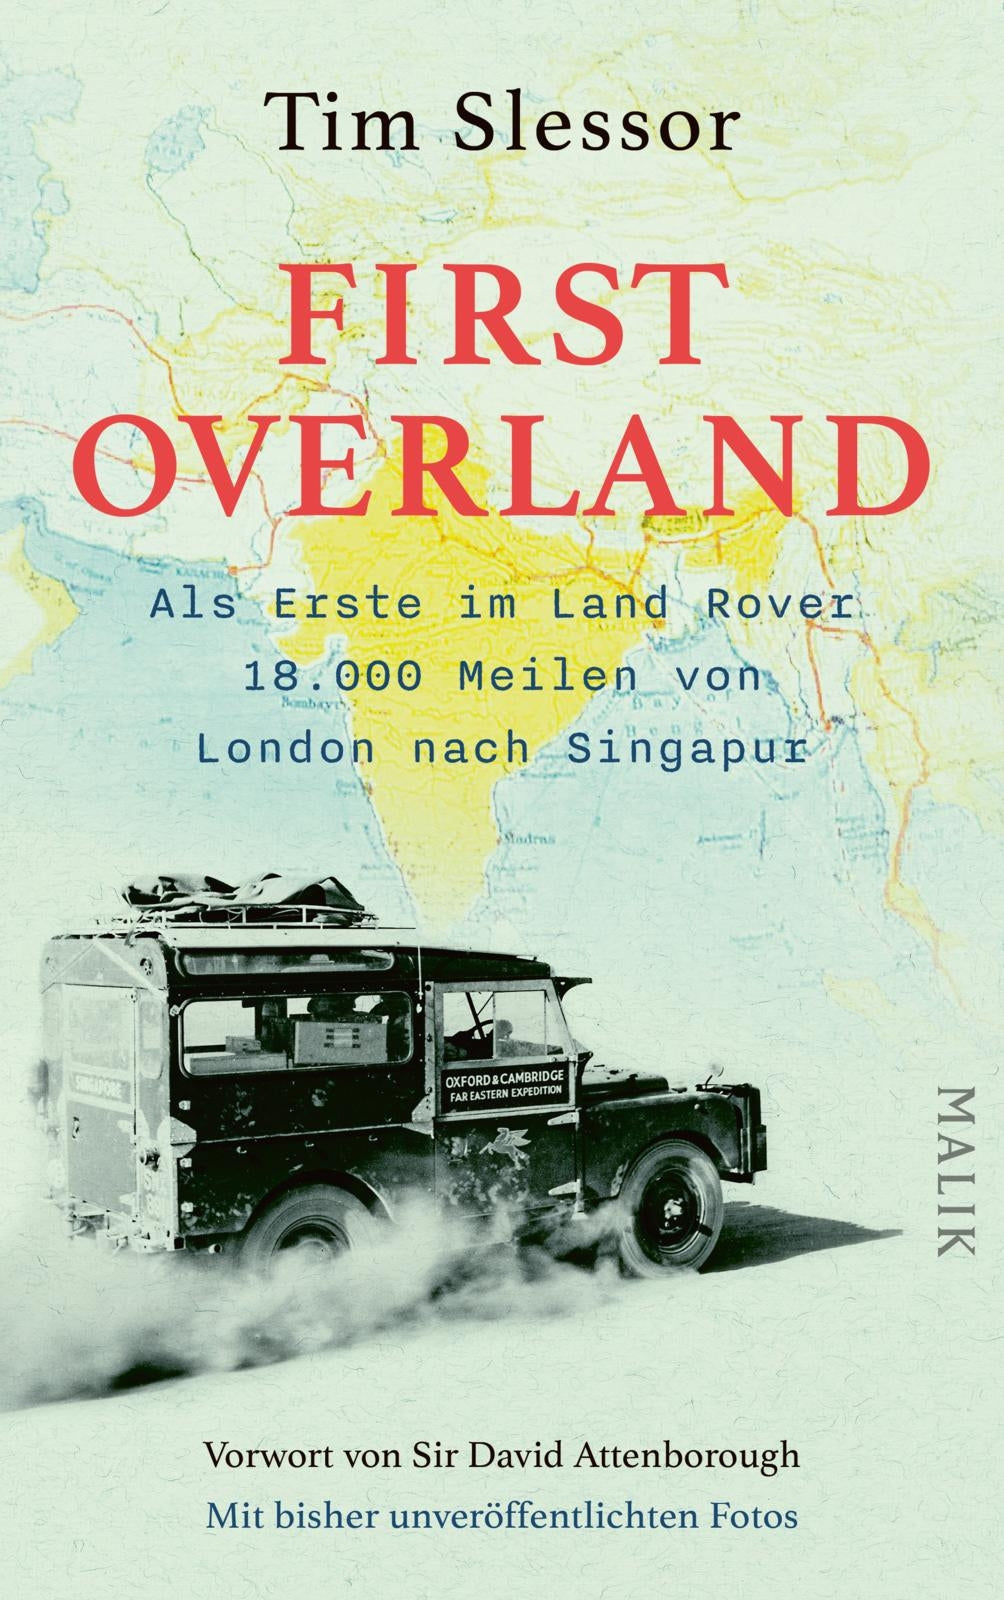 First Overland - von London nach Singapur